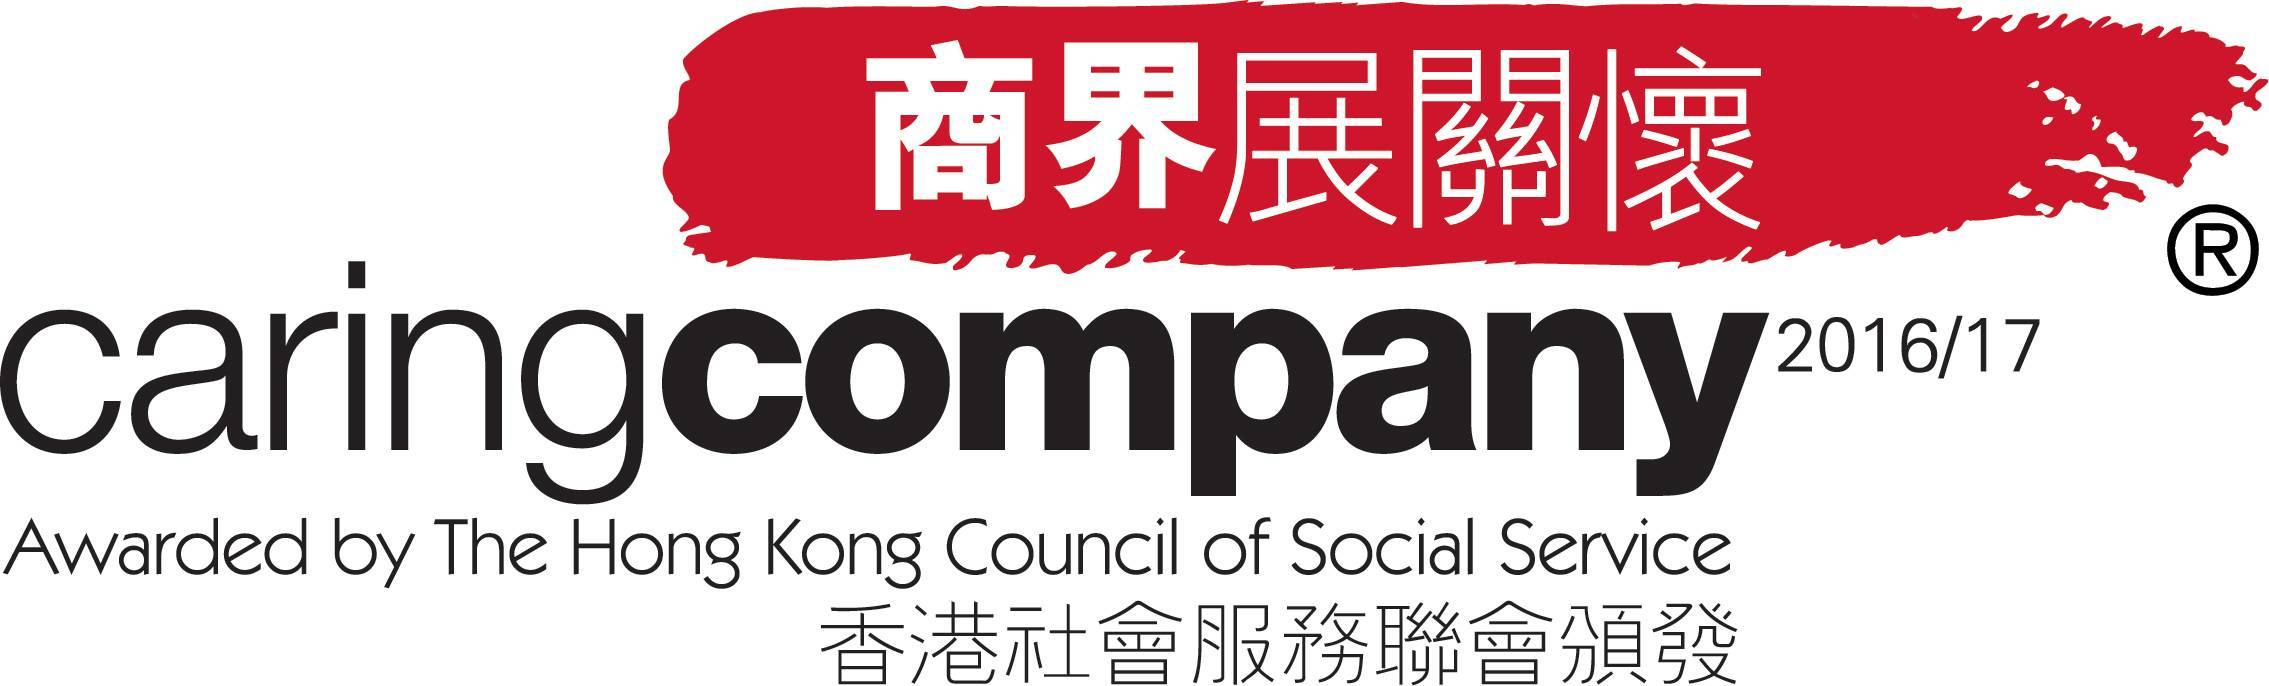 홍콩 사회봉사협회 2016/2017 Caring Company Logo